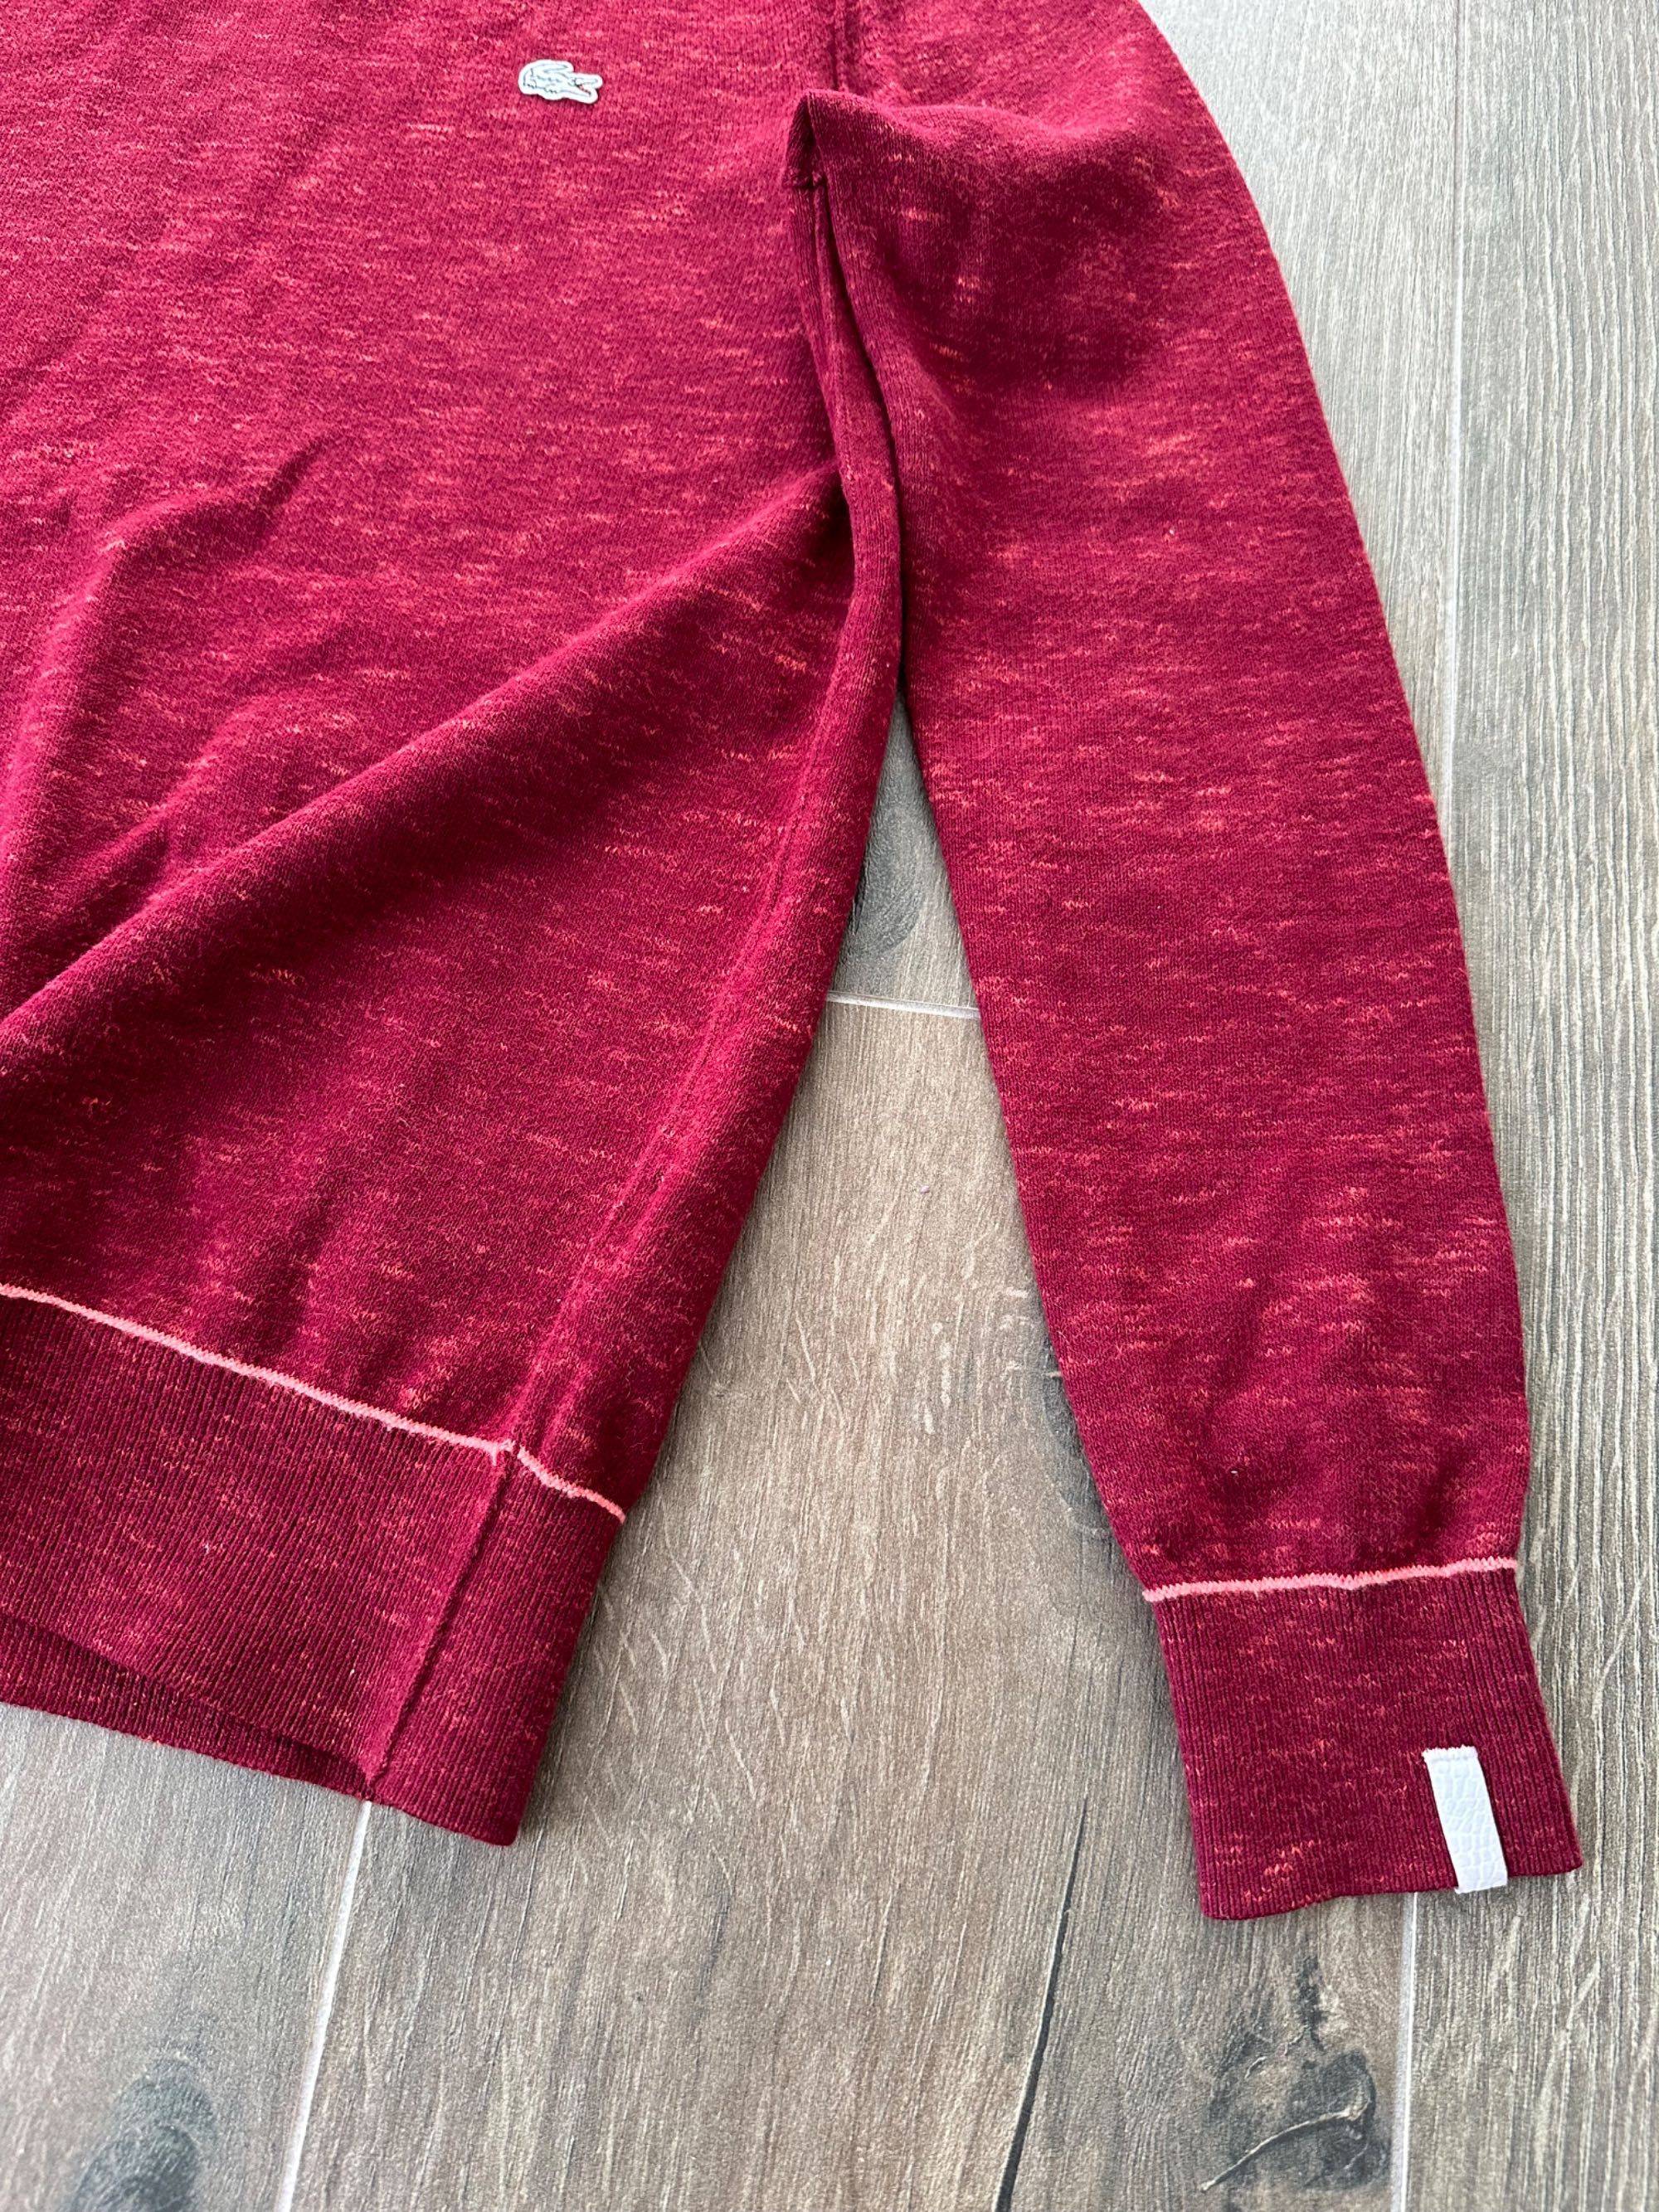 Женский свитер кофта Lacoste размер S